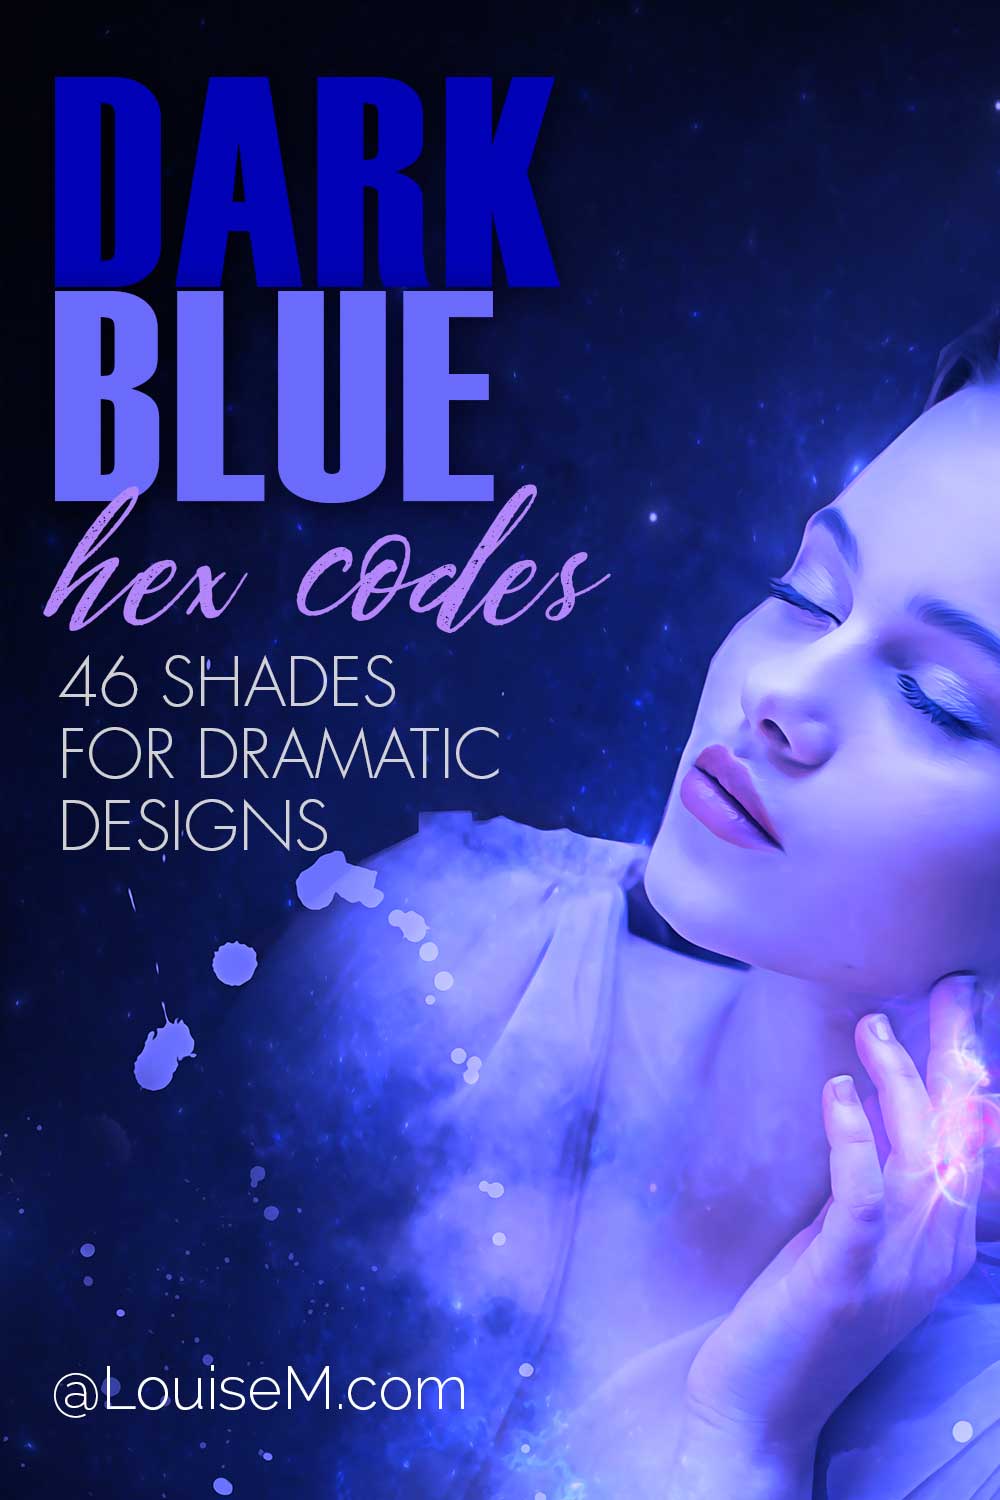 Mavi ışıktaki güzel kadının dramatik tasarımlar için metin, koyu mavi altıgen kodları var.